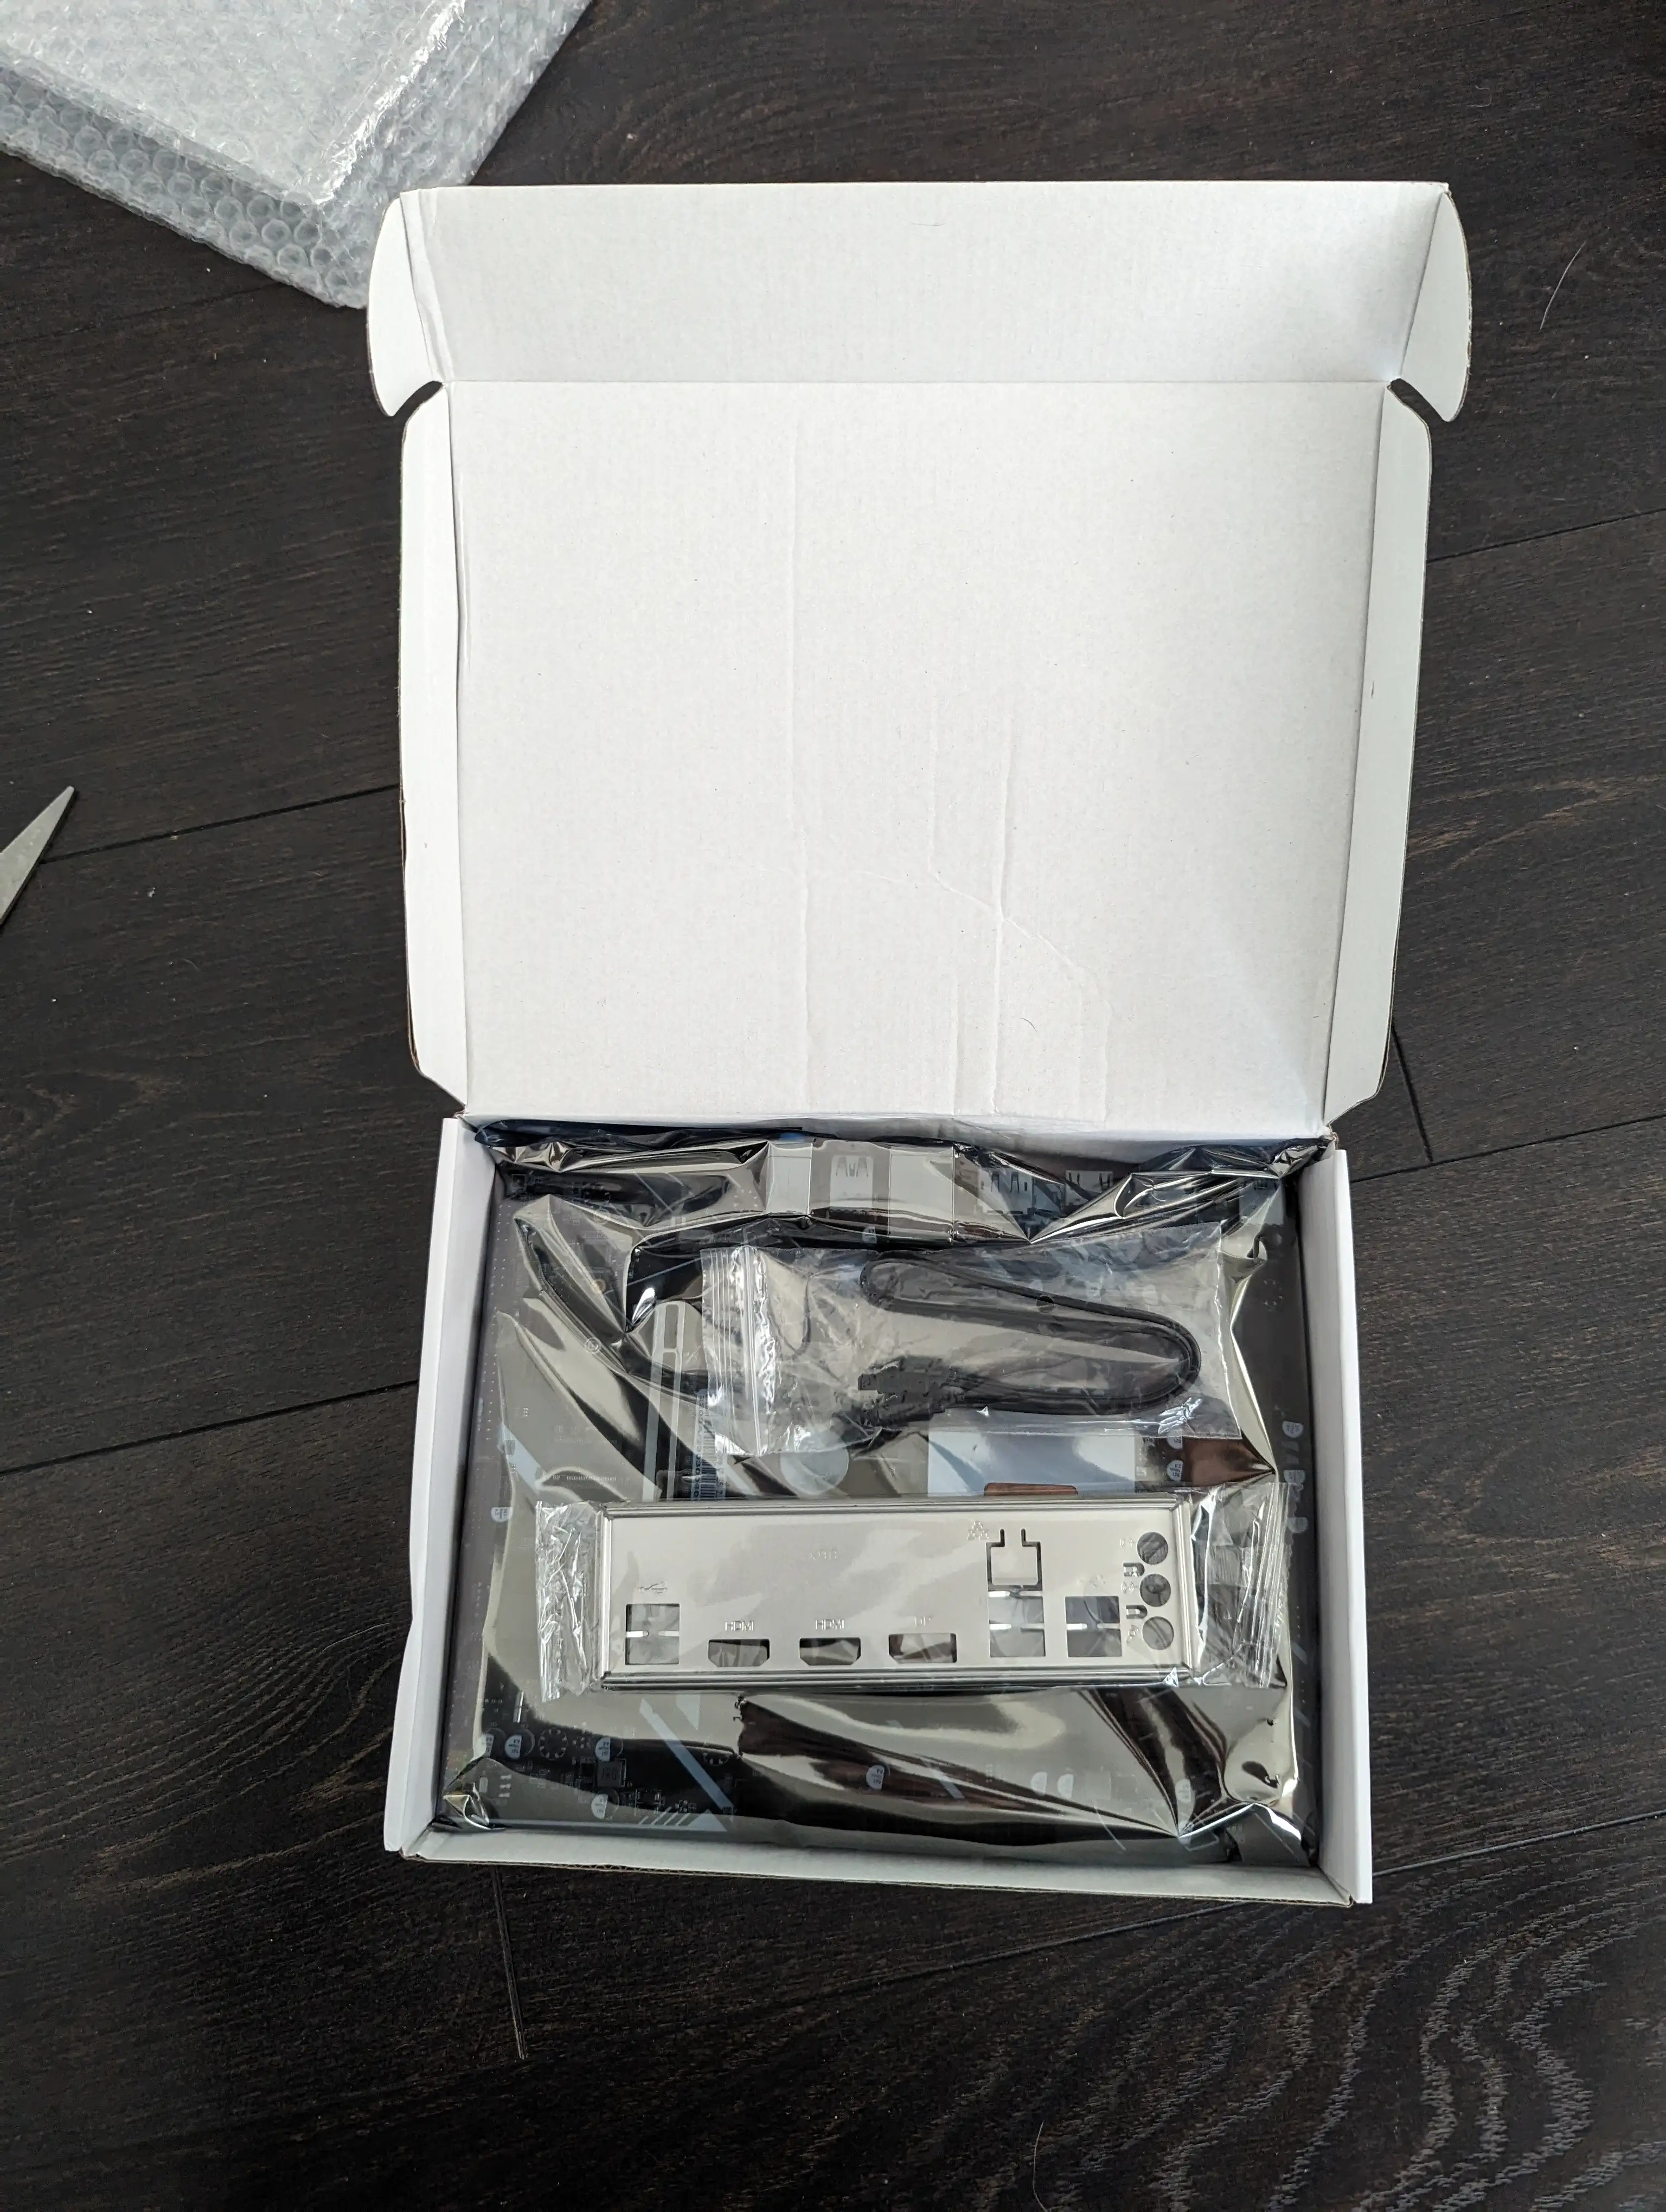 一张显示 Erying 主板盒内部的照片，显示了一块装在防静电袋中的主板、一个非常基本的 IO 屏蔽和一条黑色 SATA 电缆。